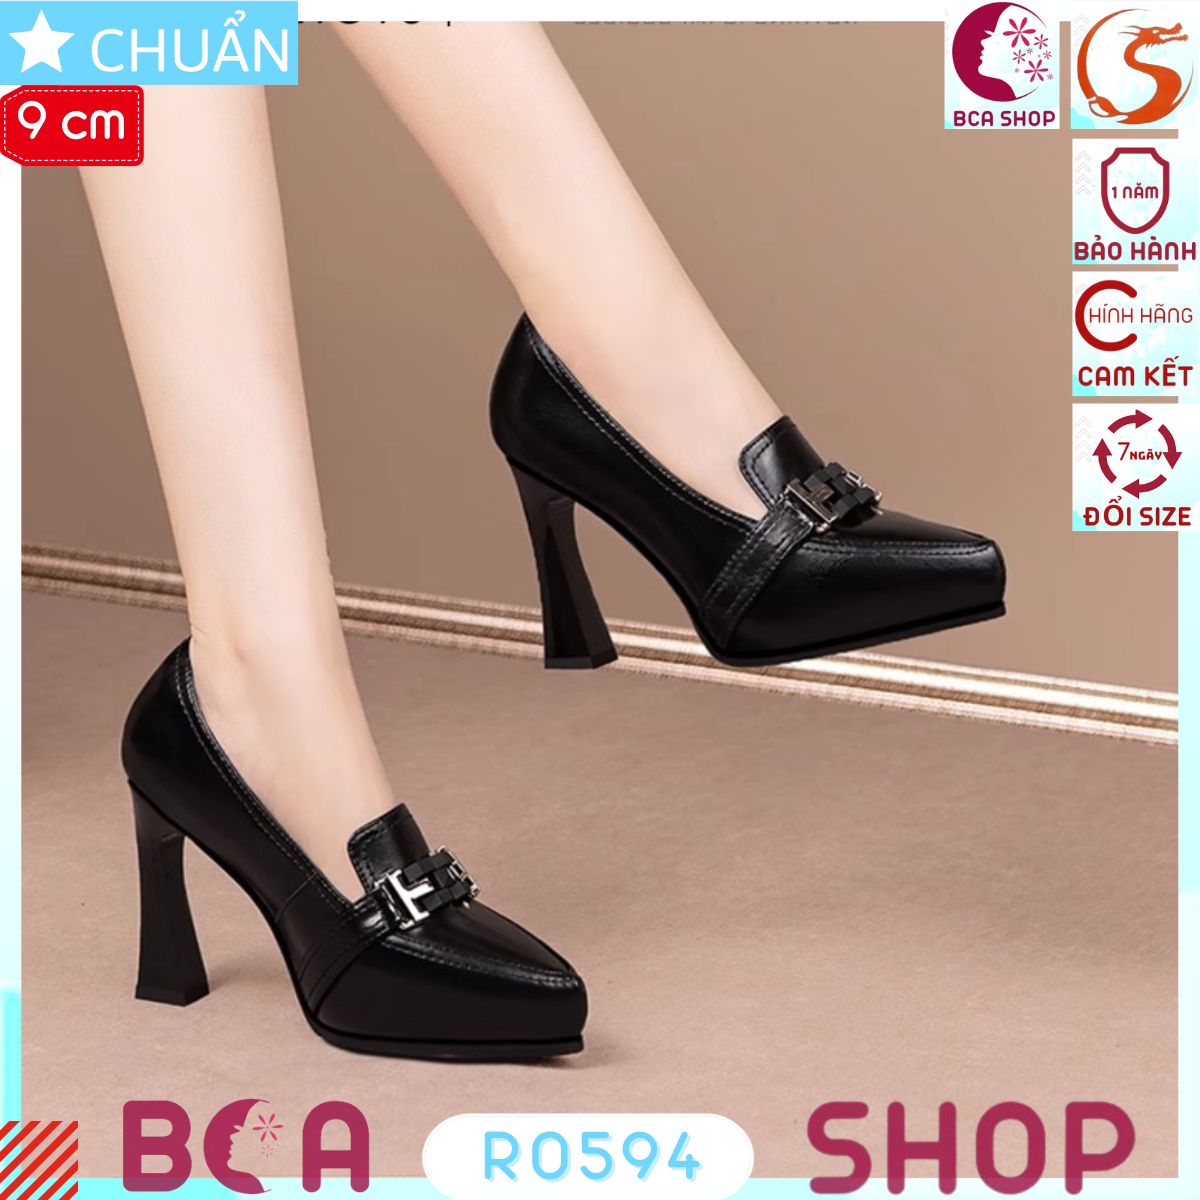 Giày cao gót nữ đế đúp 9p RO594 ROSATA tại BCASHOP kiểu dáng công sở tôn dáng và thời trang, thể hiện đẳng cấp